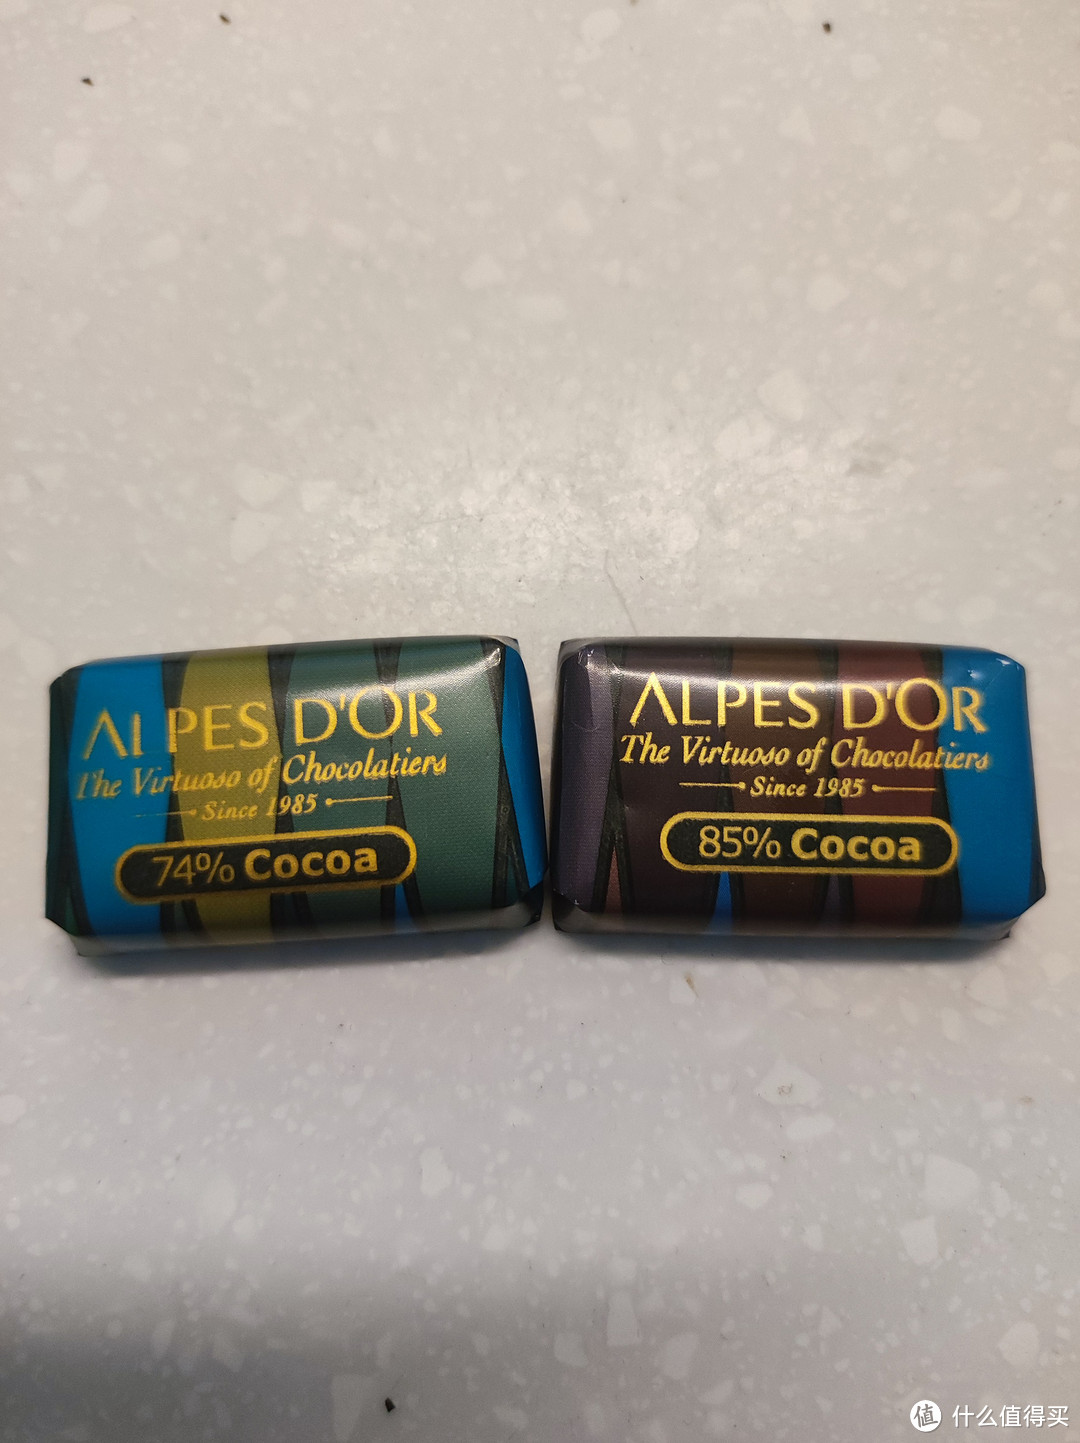 来自欧洲的巧克力双兄弟-爱普诗/克特多金象吃起来怎么样？